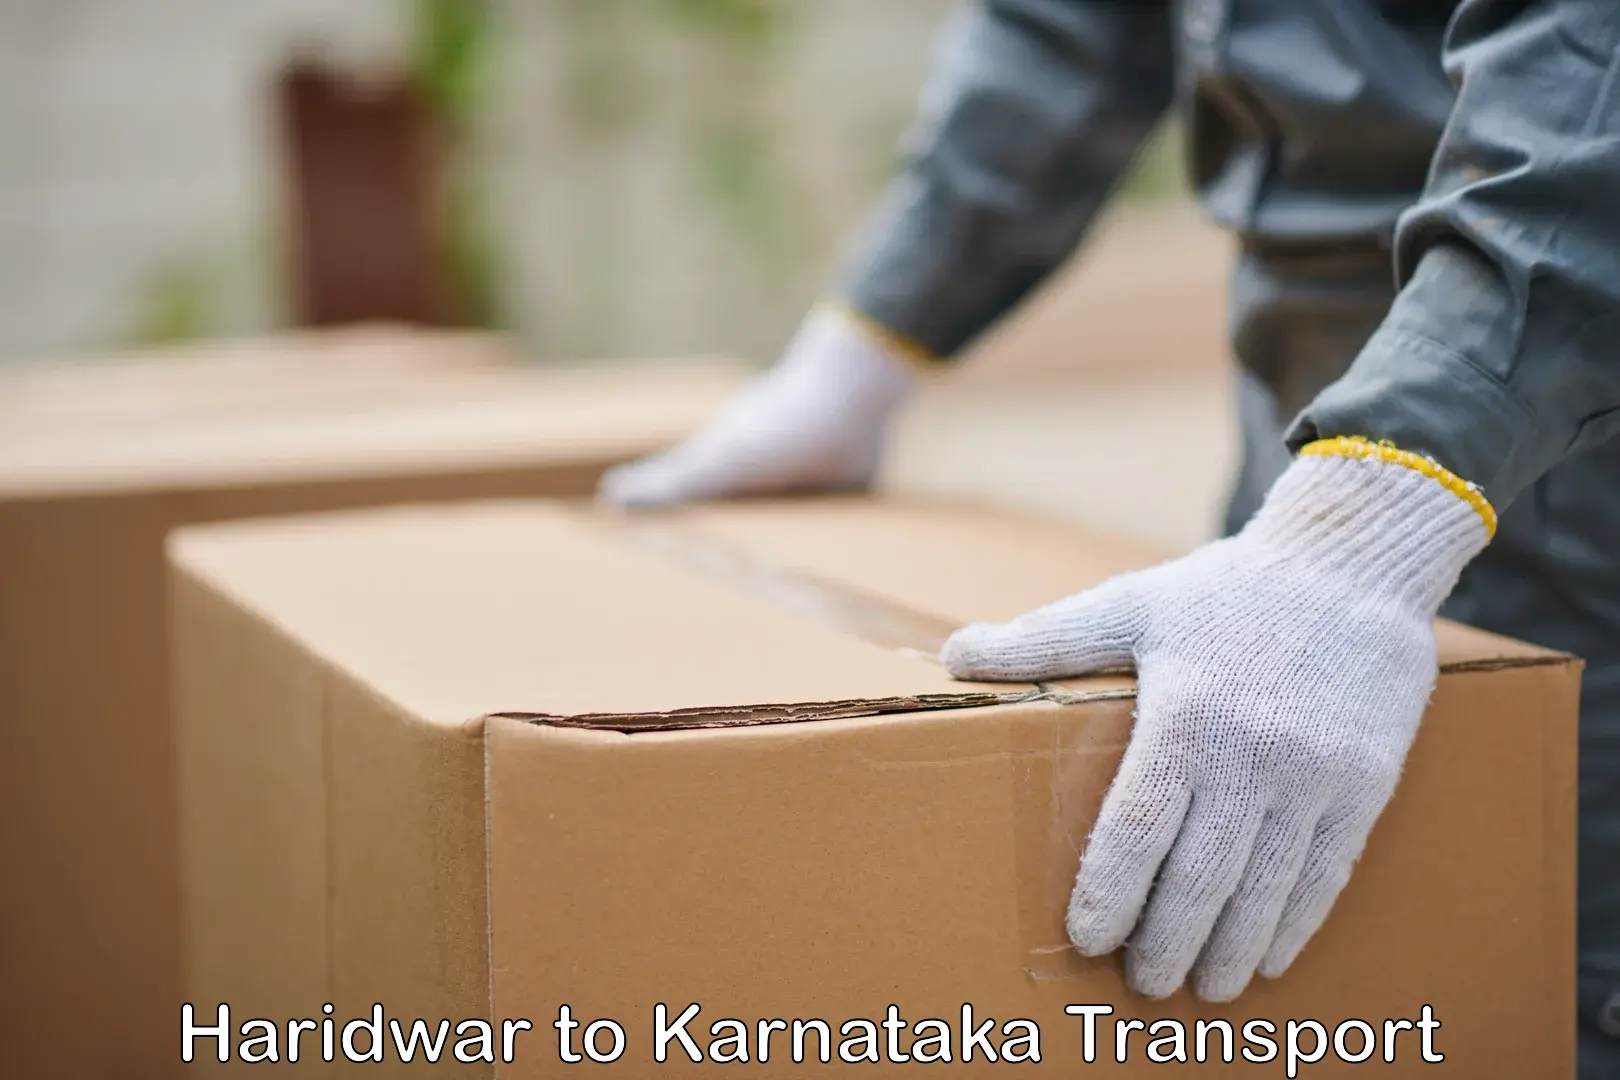 Online transport service Haridwar to Koppa